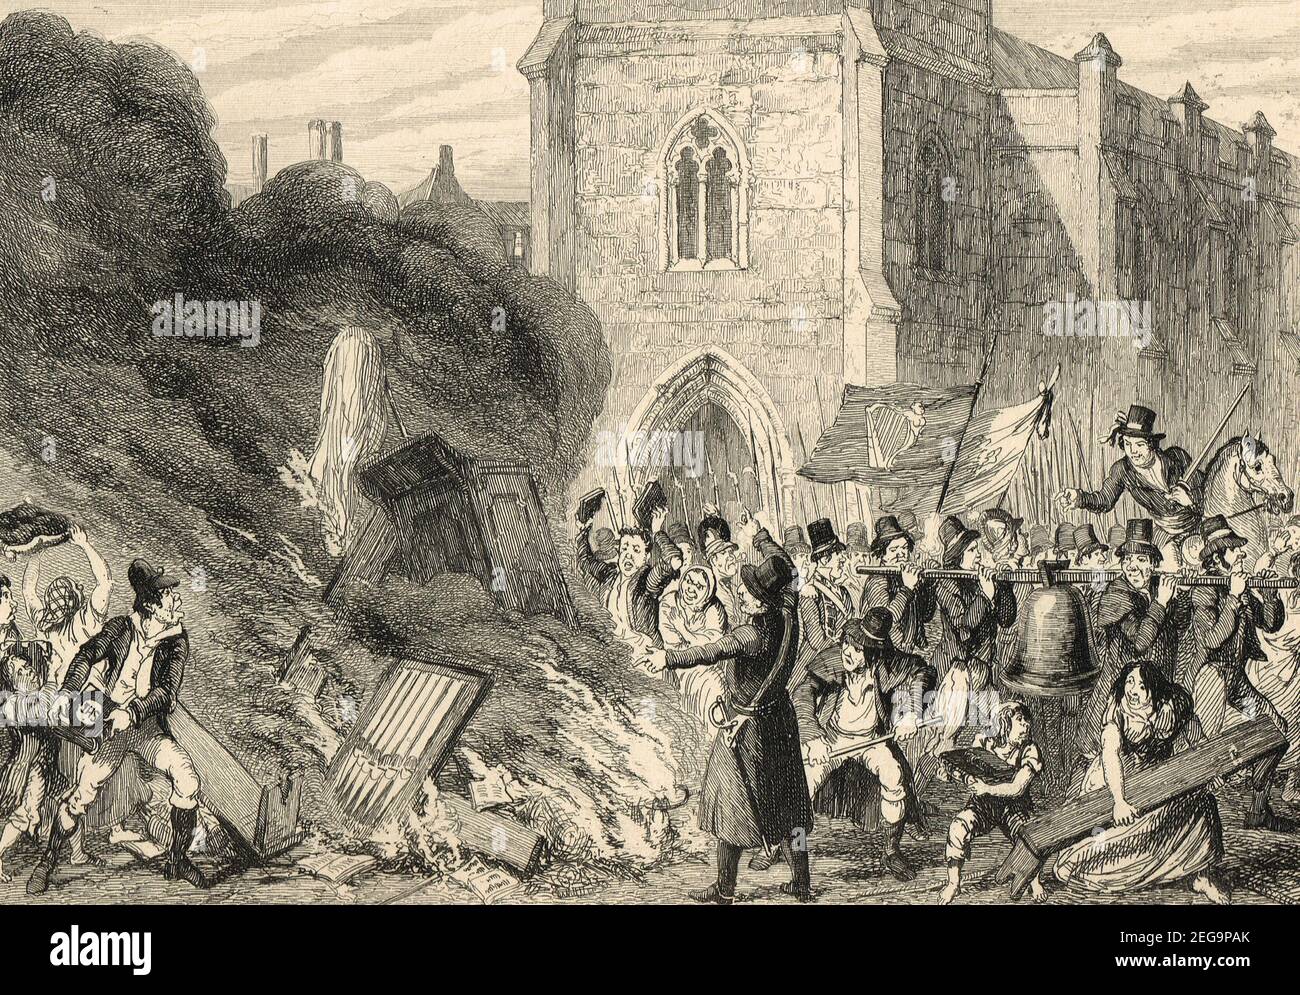 La destrucción de la iglesia en Enniscorthy, un supuesto incidente durante la rebelión irlandesa de 1798 Foto de stock